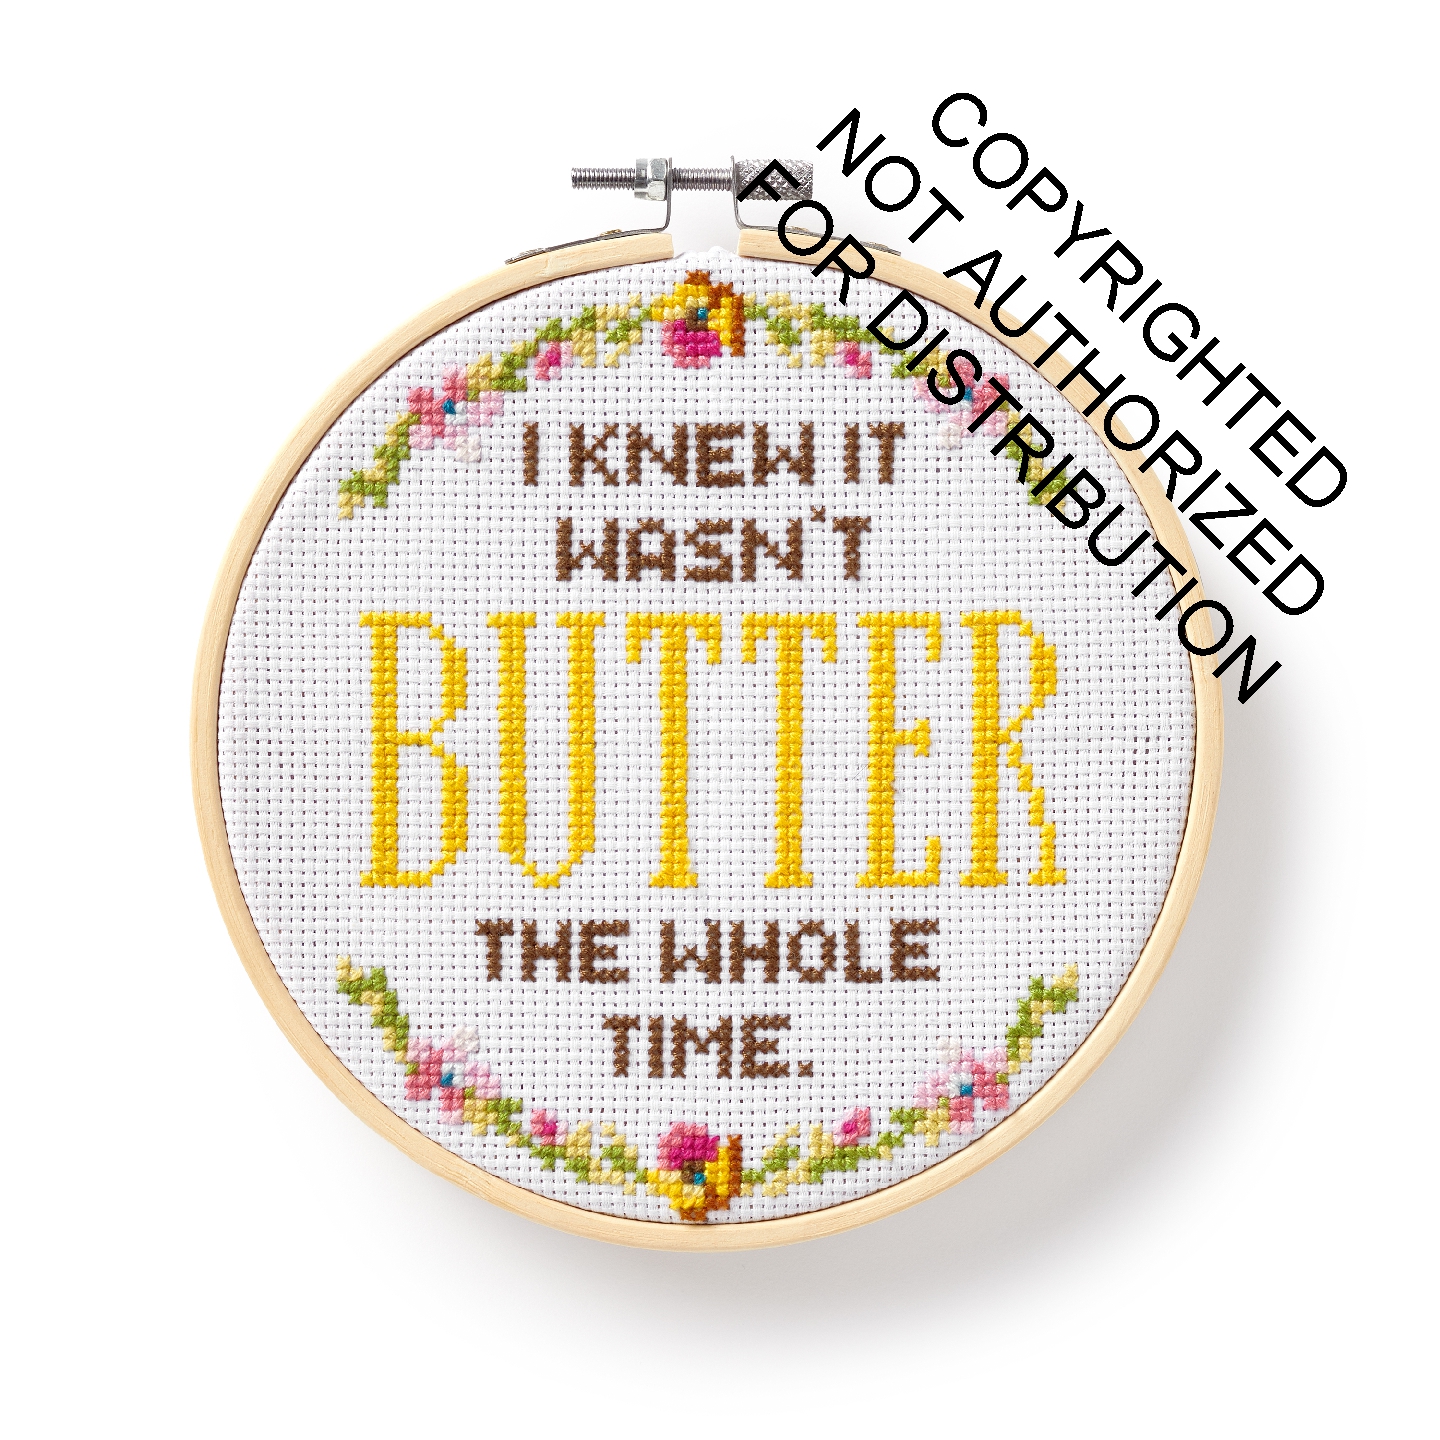 I Knew It Wasn't Butter Cross Stitch Kit